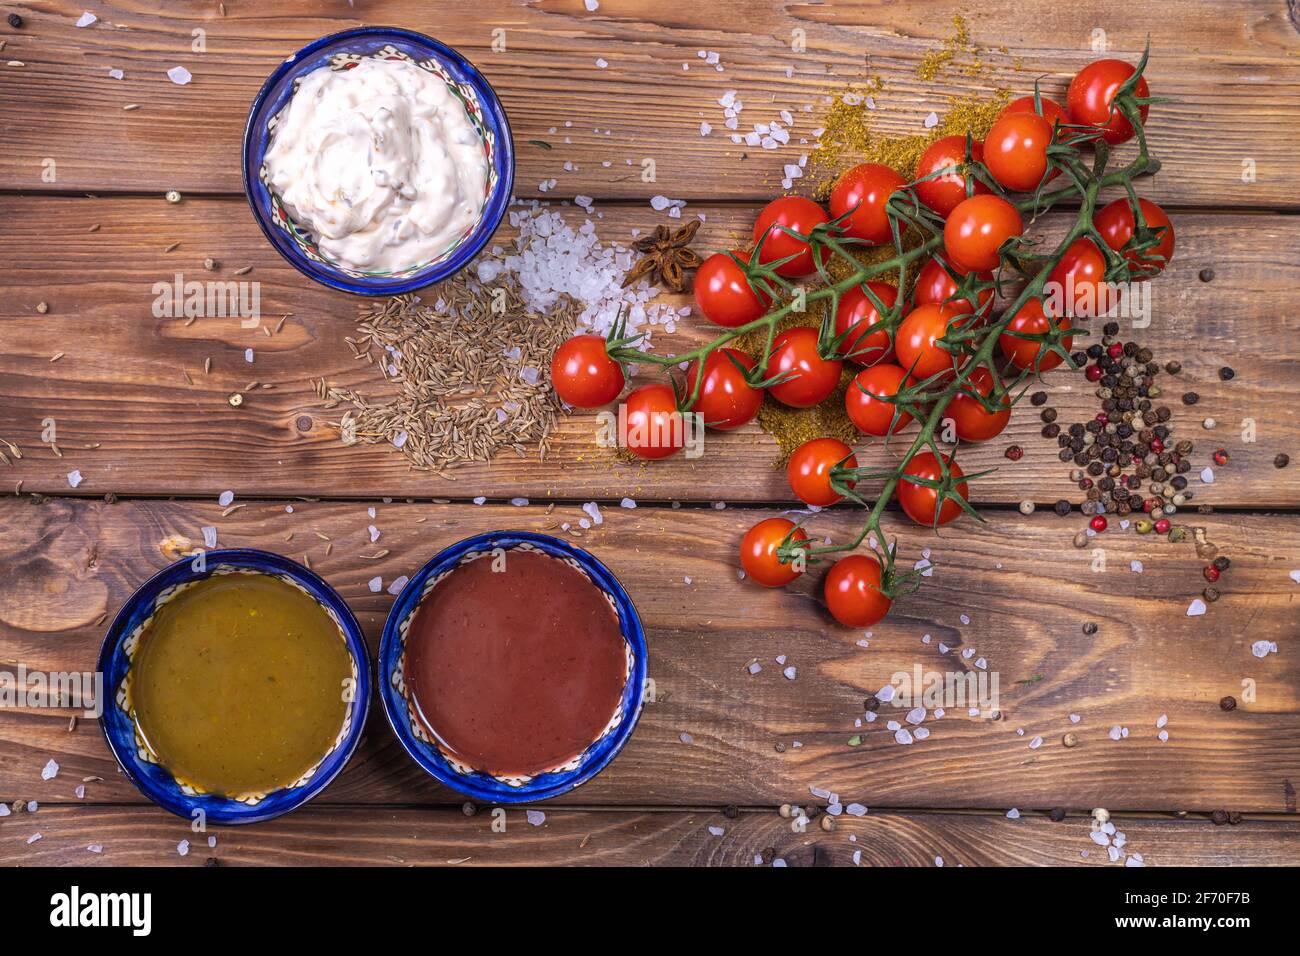 Salsa all'assortimento su fondo di legno marrone, decorata con pepe, pomodori ciliegini, spezie, sale grosso. Menu del ristorante. Foto Stock